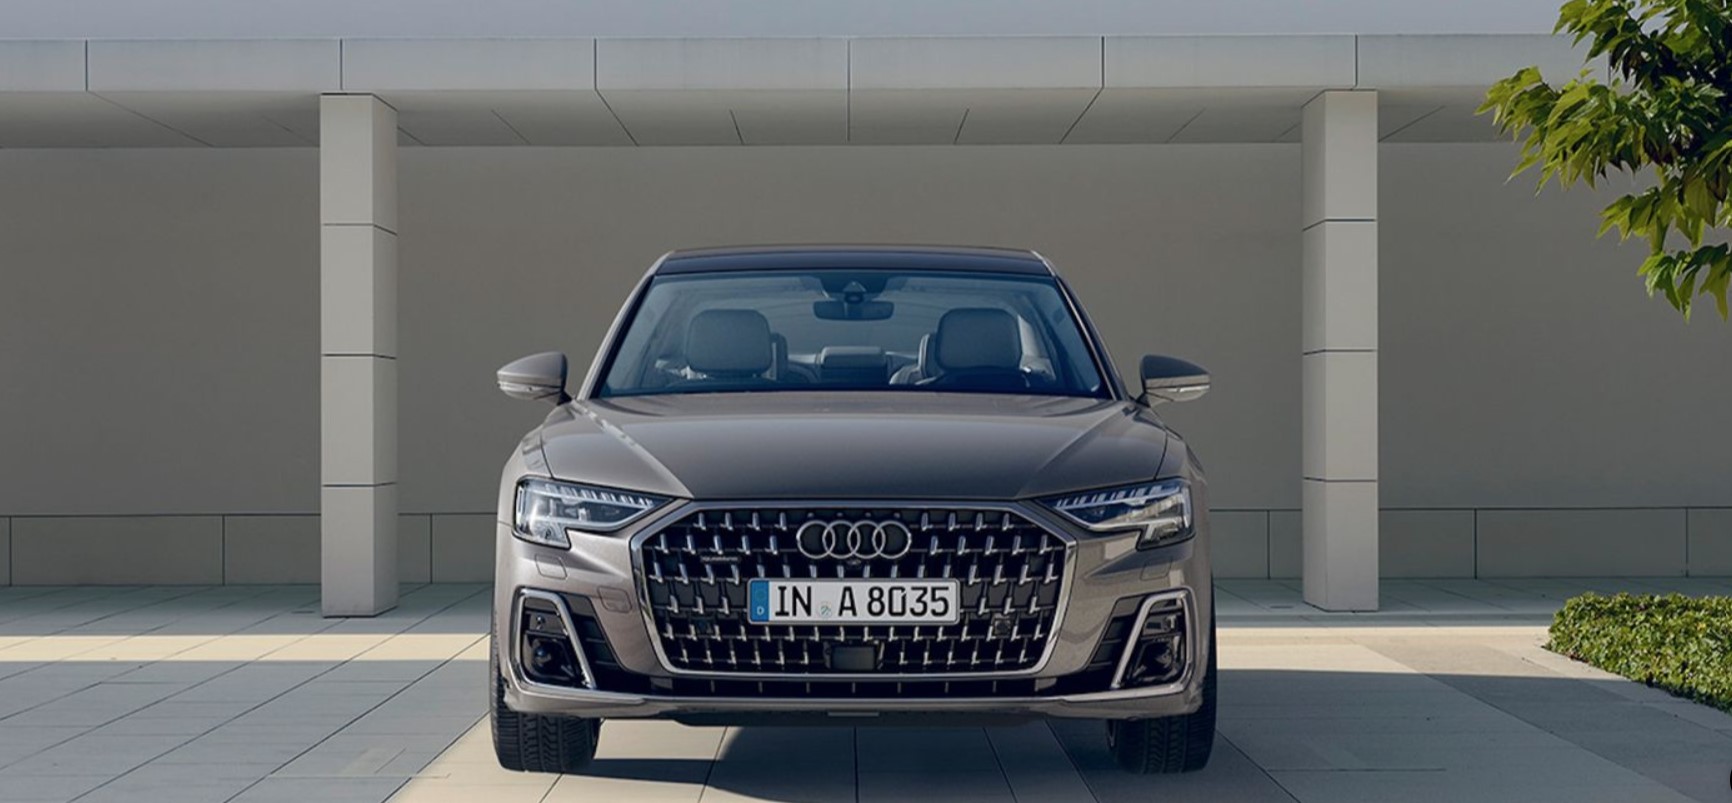 Компания Audi выпустила новую версию флагманского седана A8L